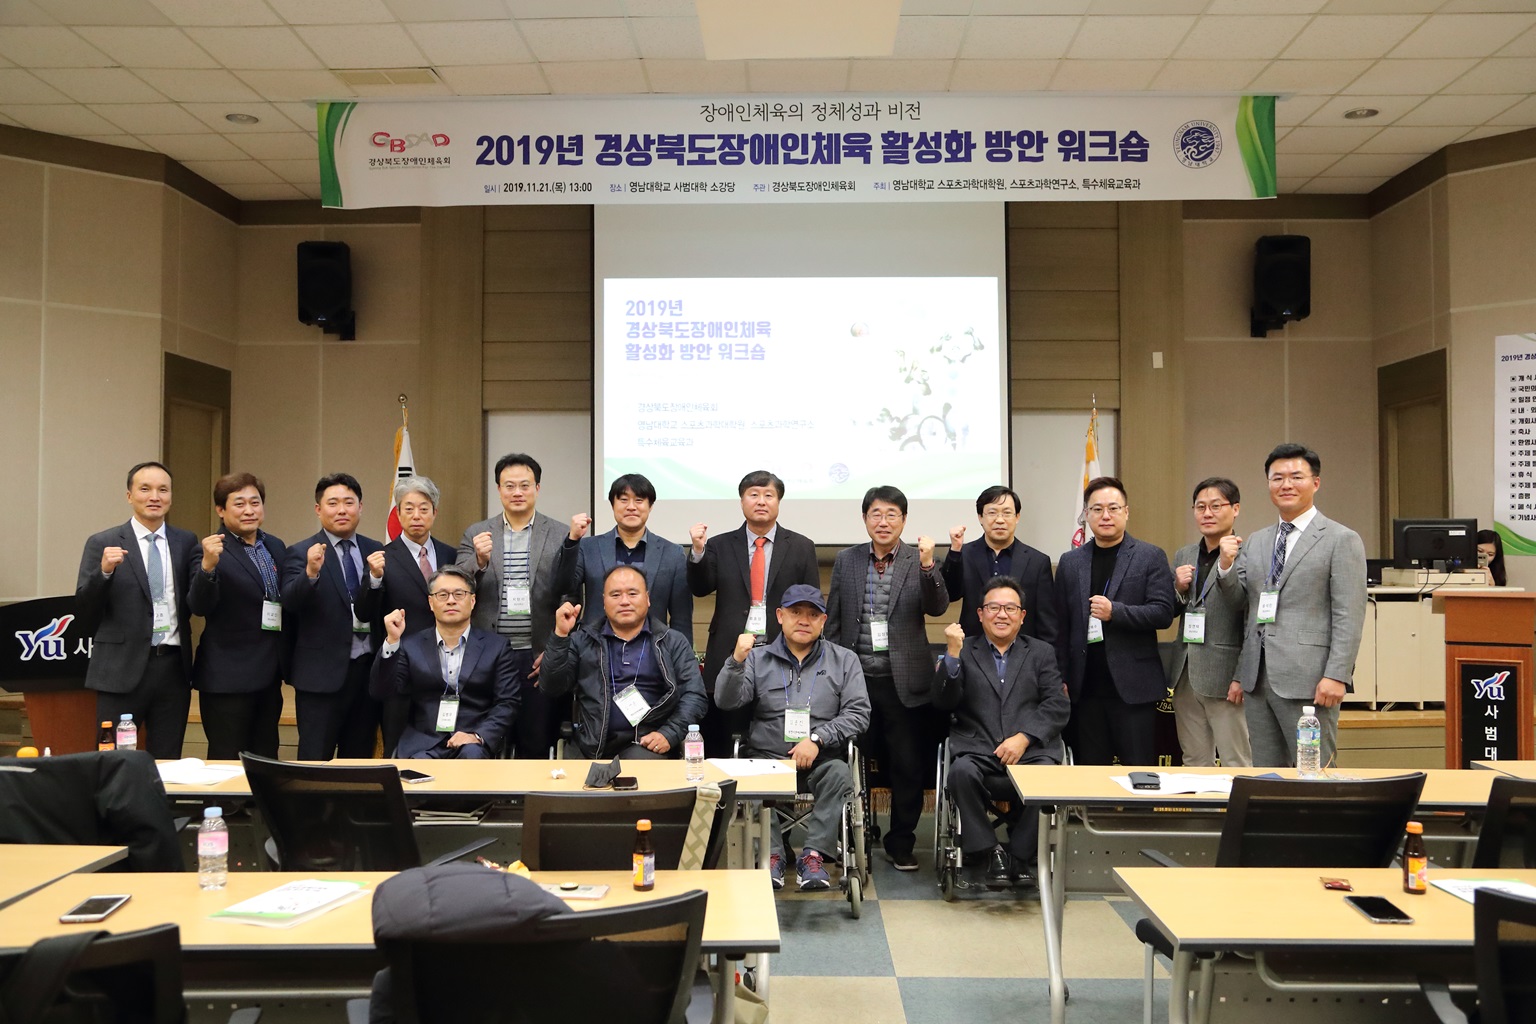 2019년 경상북도장애인체육 활성화 방안 워크숍